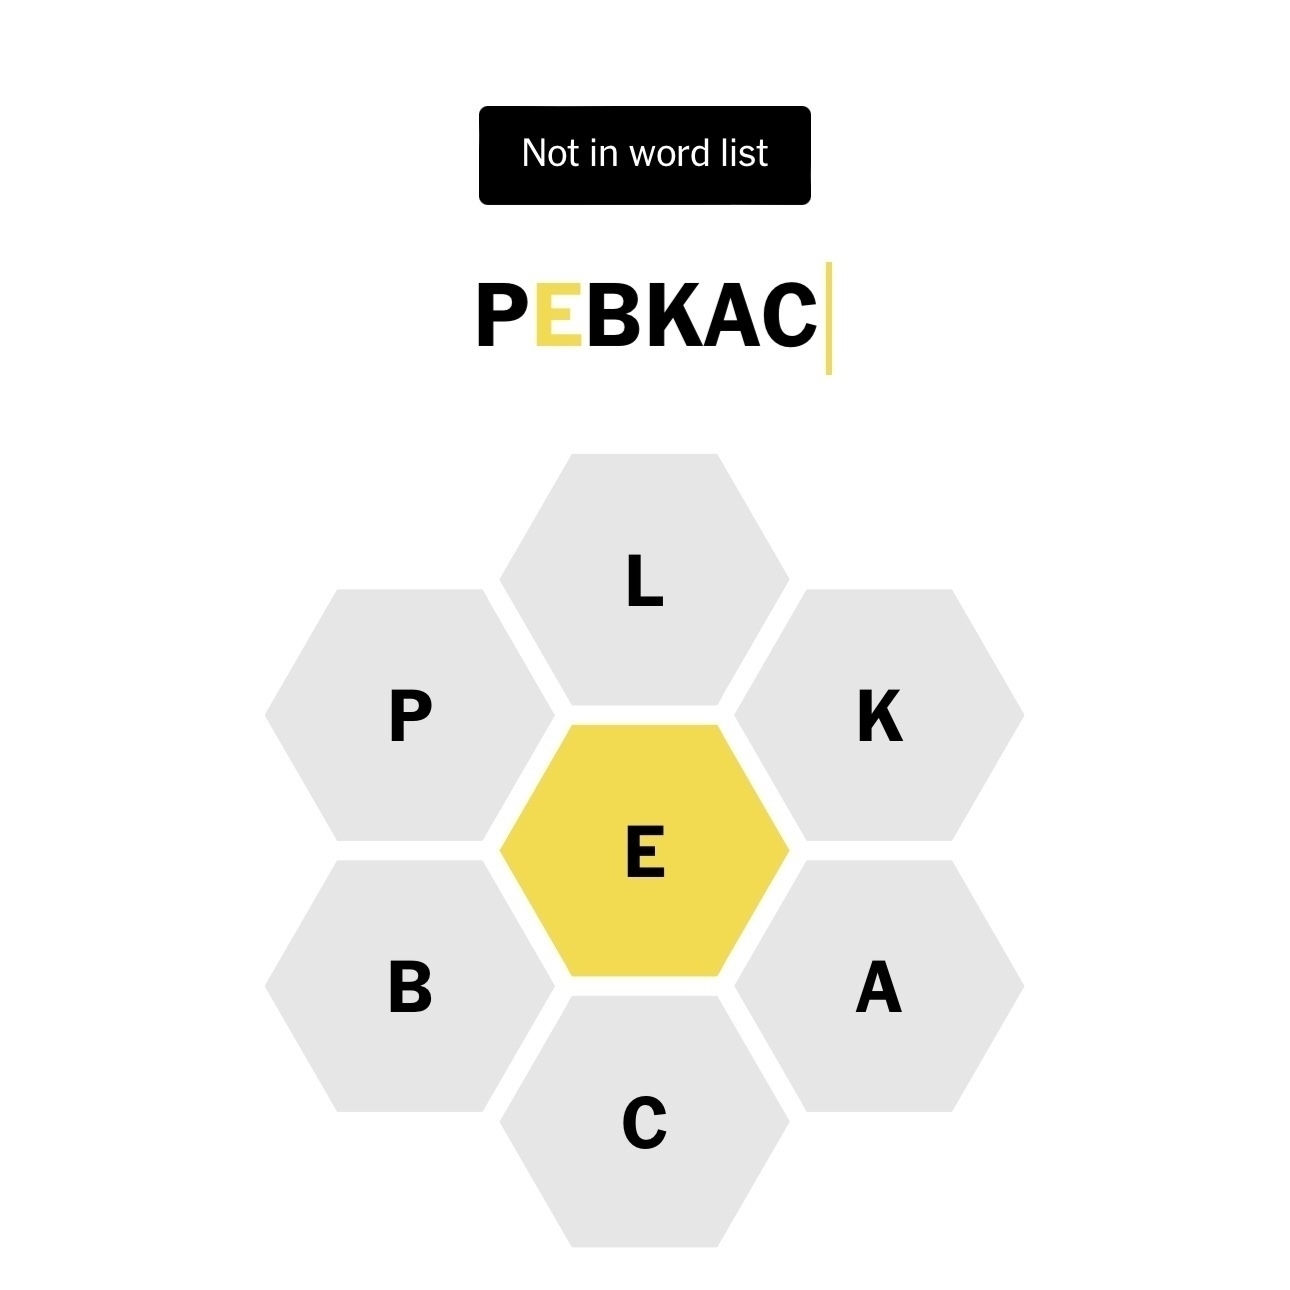 SpellingBee med ordet pebkac som ikke godkjent